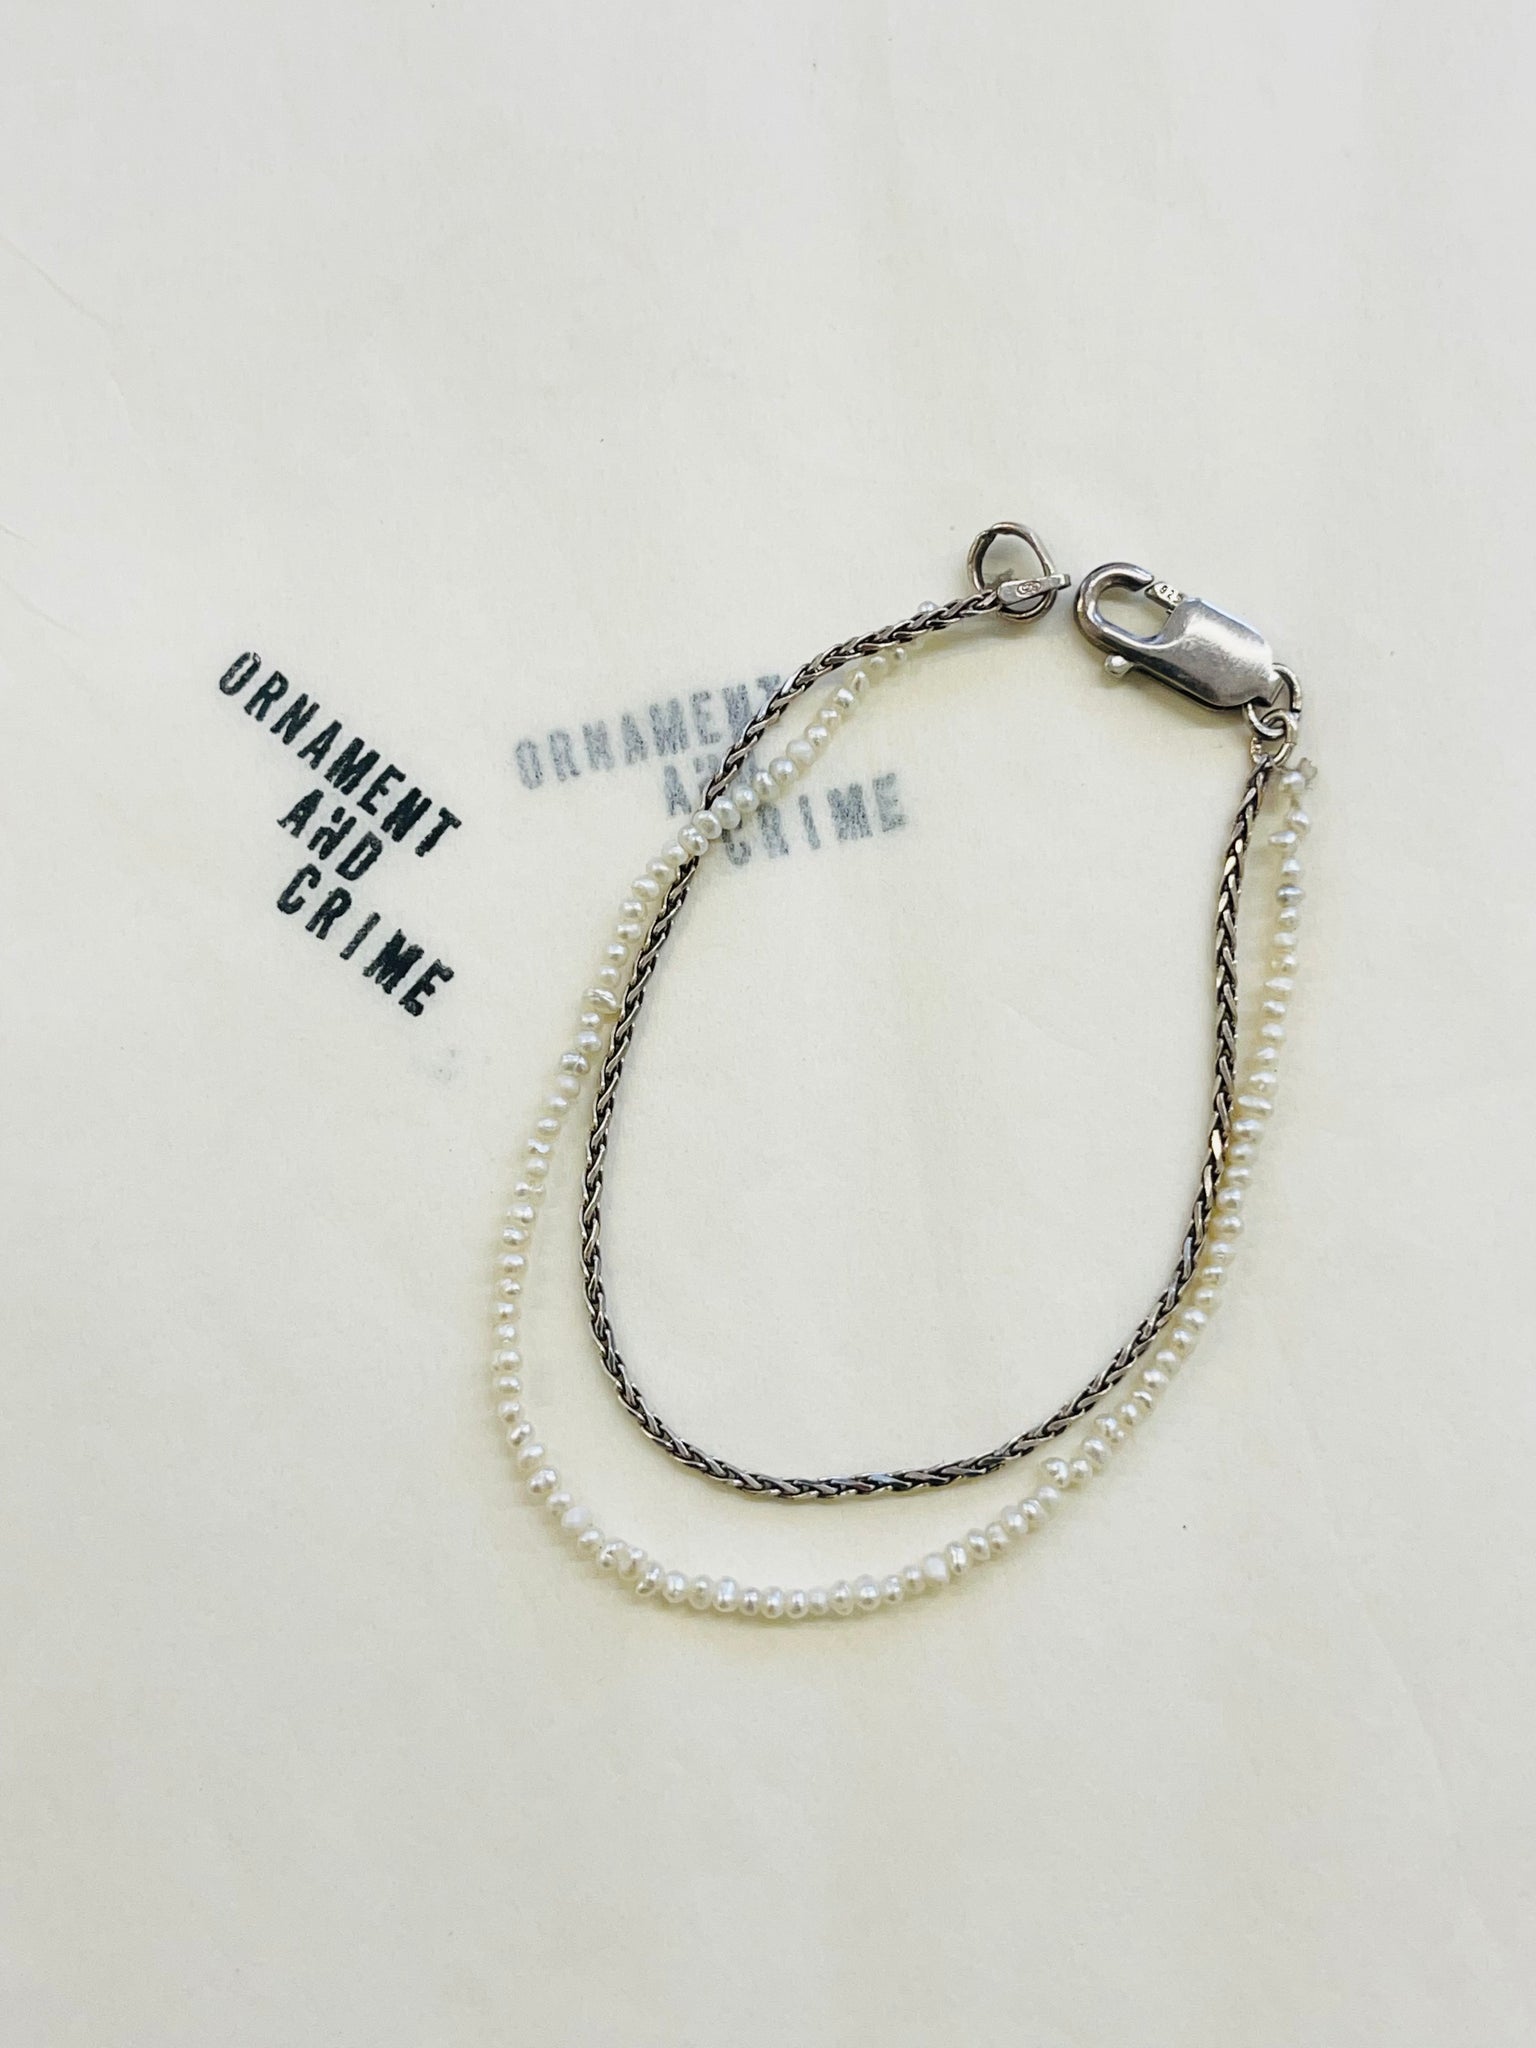 Monster's wedding necklace/ bracelet